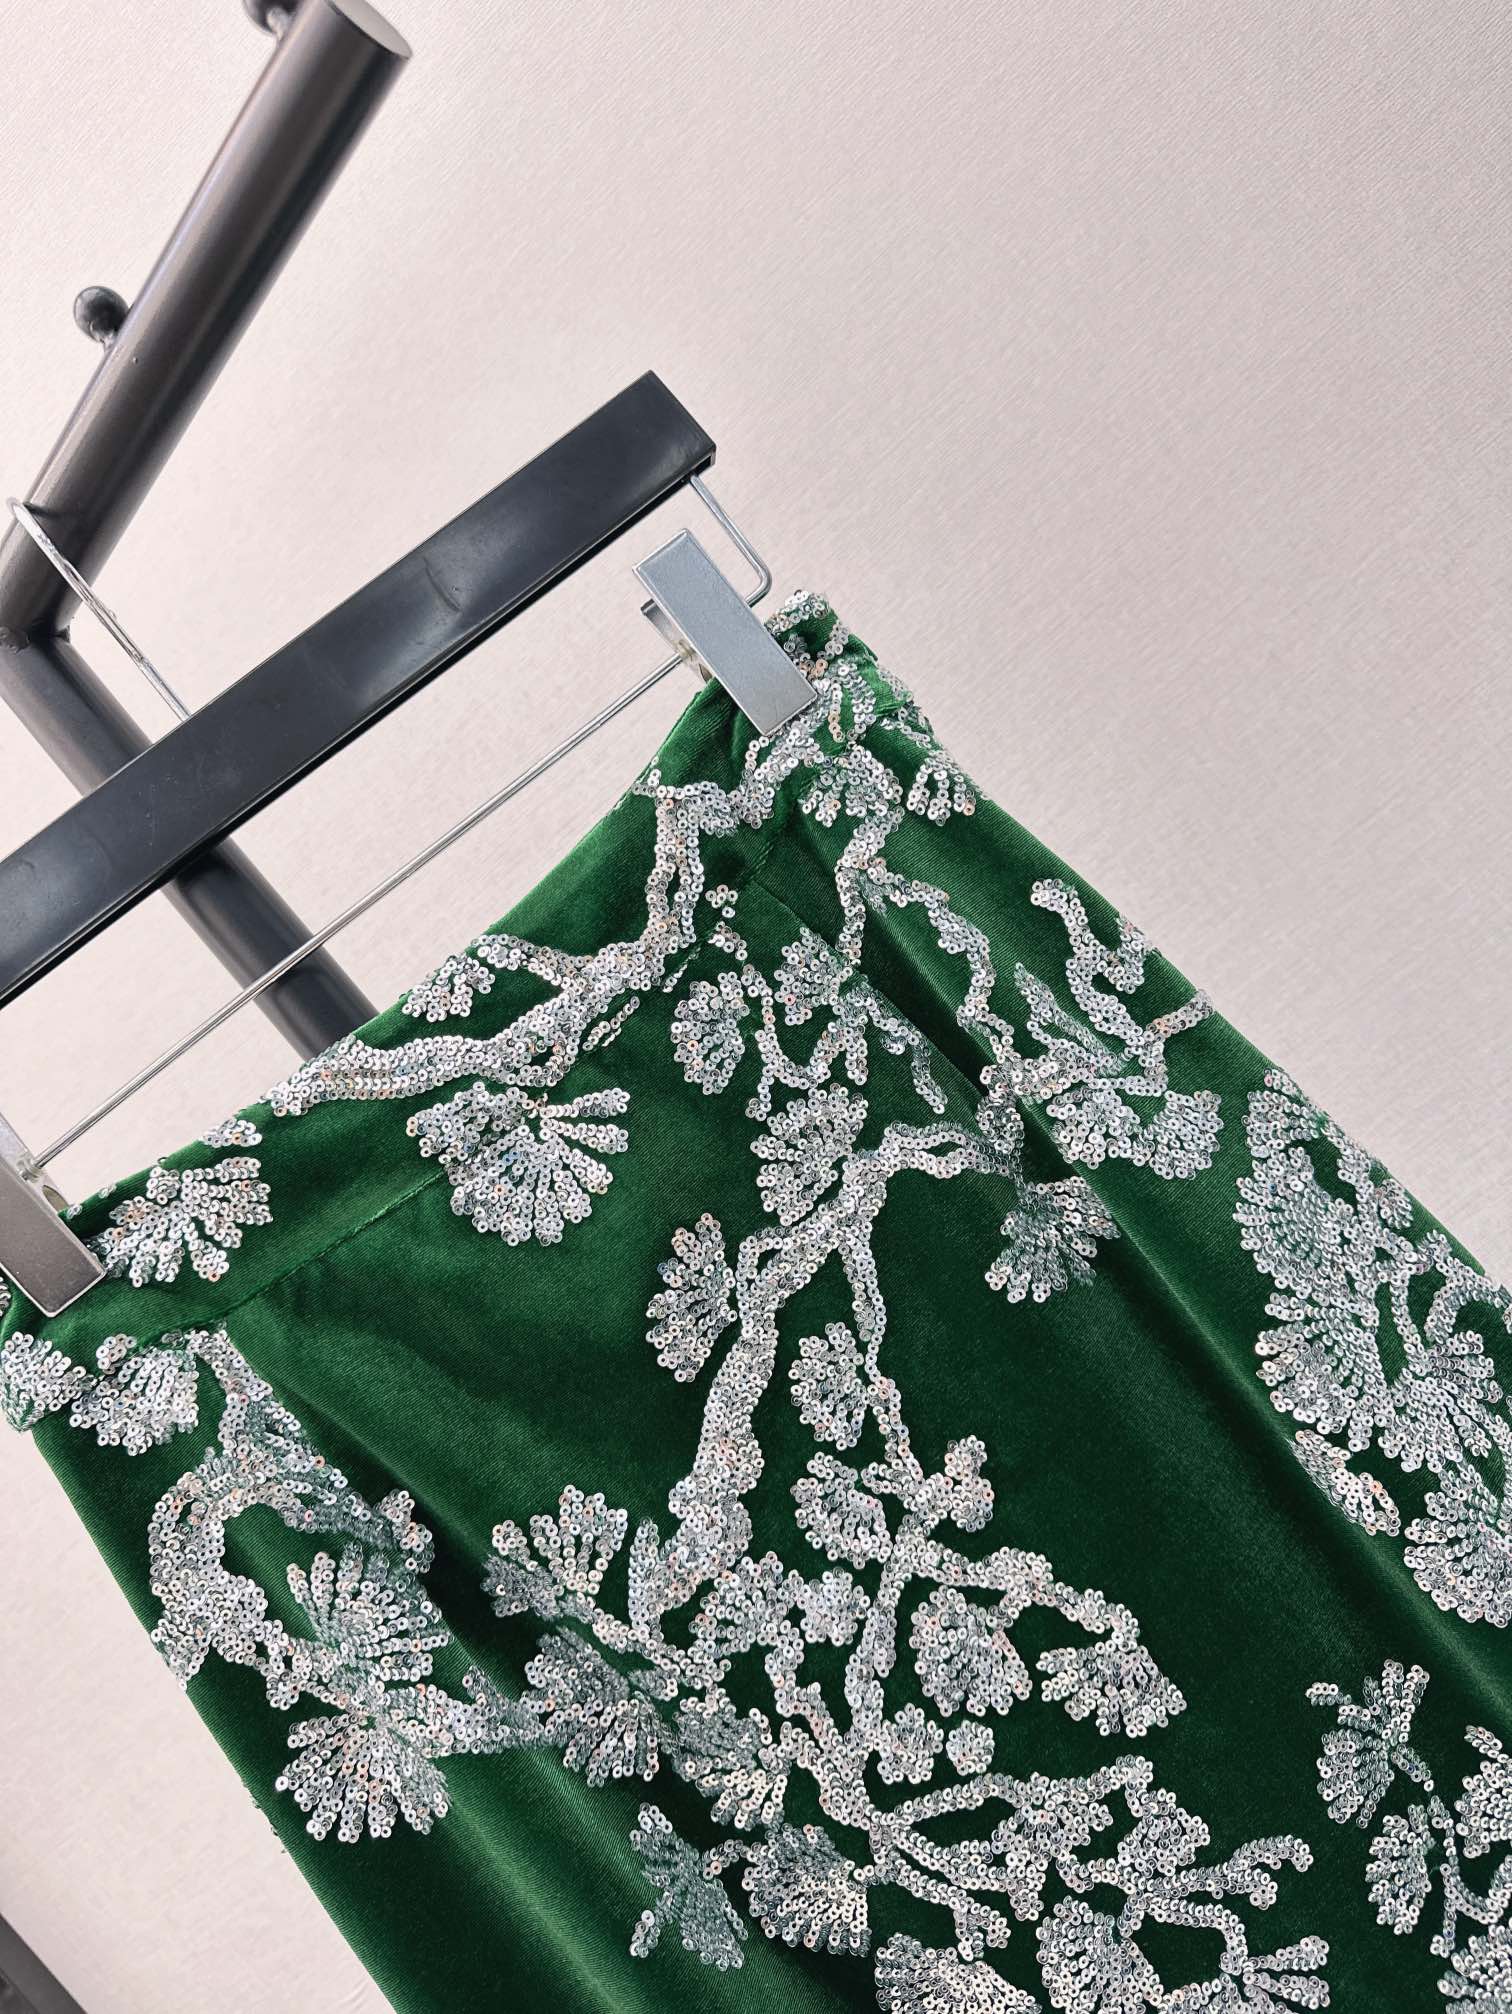 时髦小众设计24Ss春夏最新款祖母绿重磅丝绒半裙是我贵族奶奶的祖母绿呀超级正超级美的丝绒珠片面料我家用的